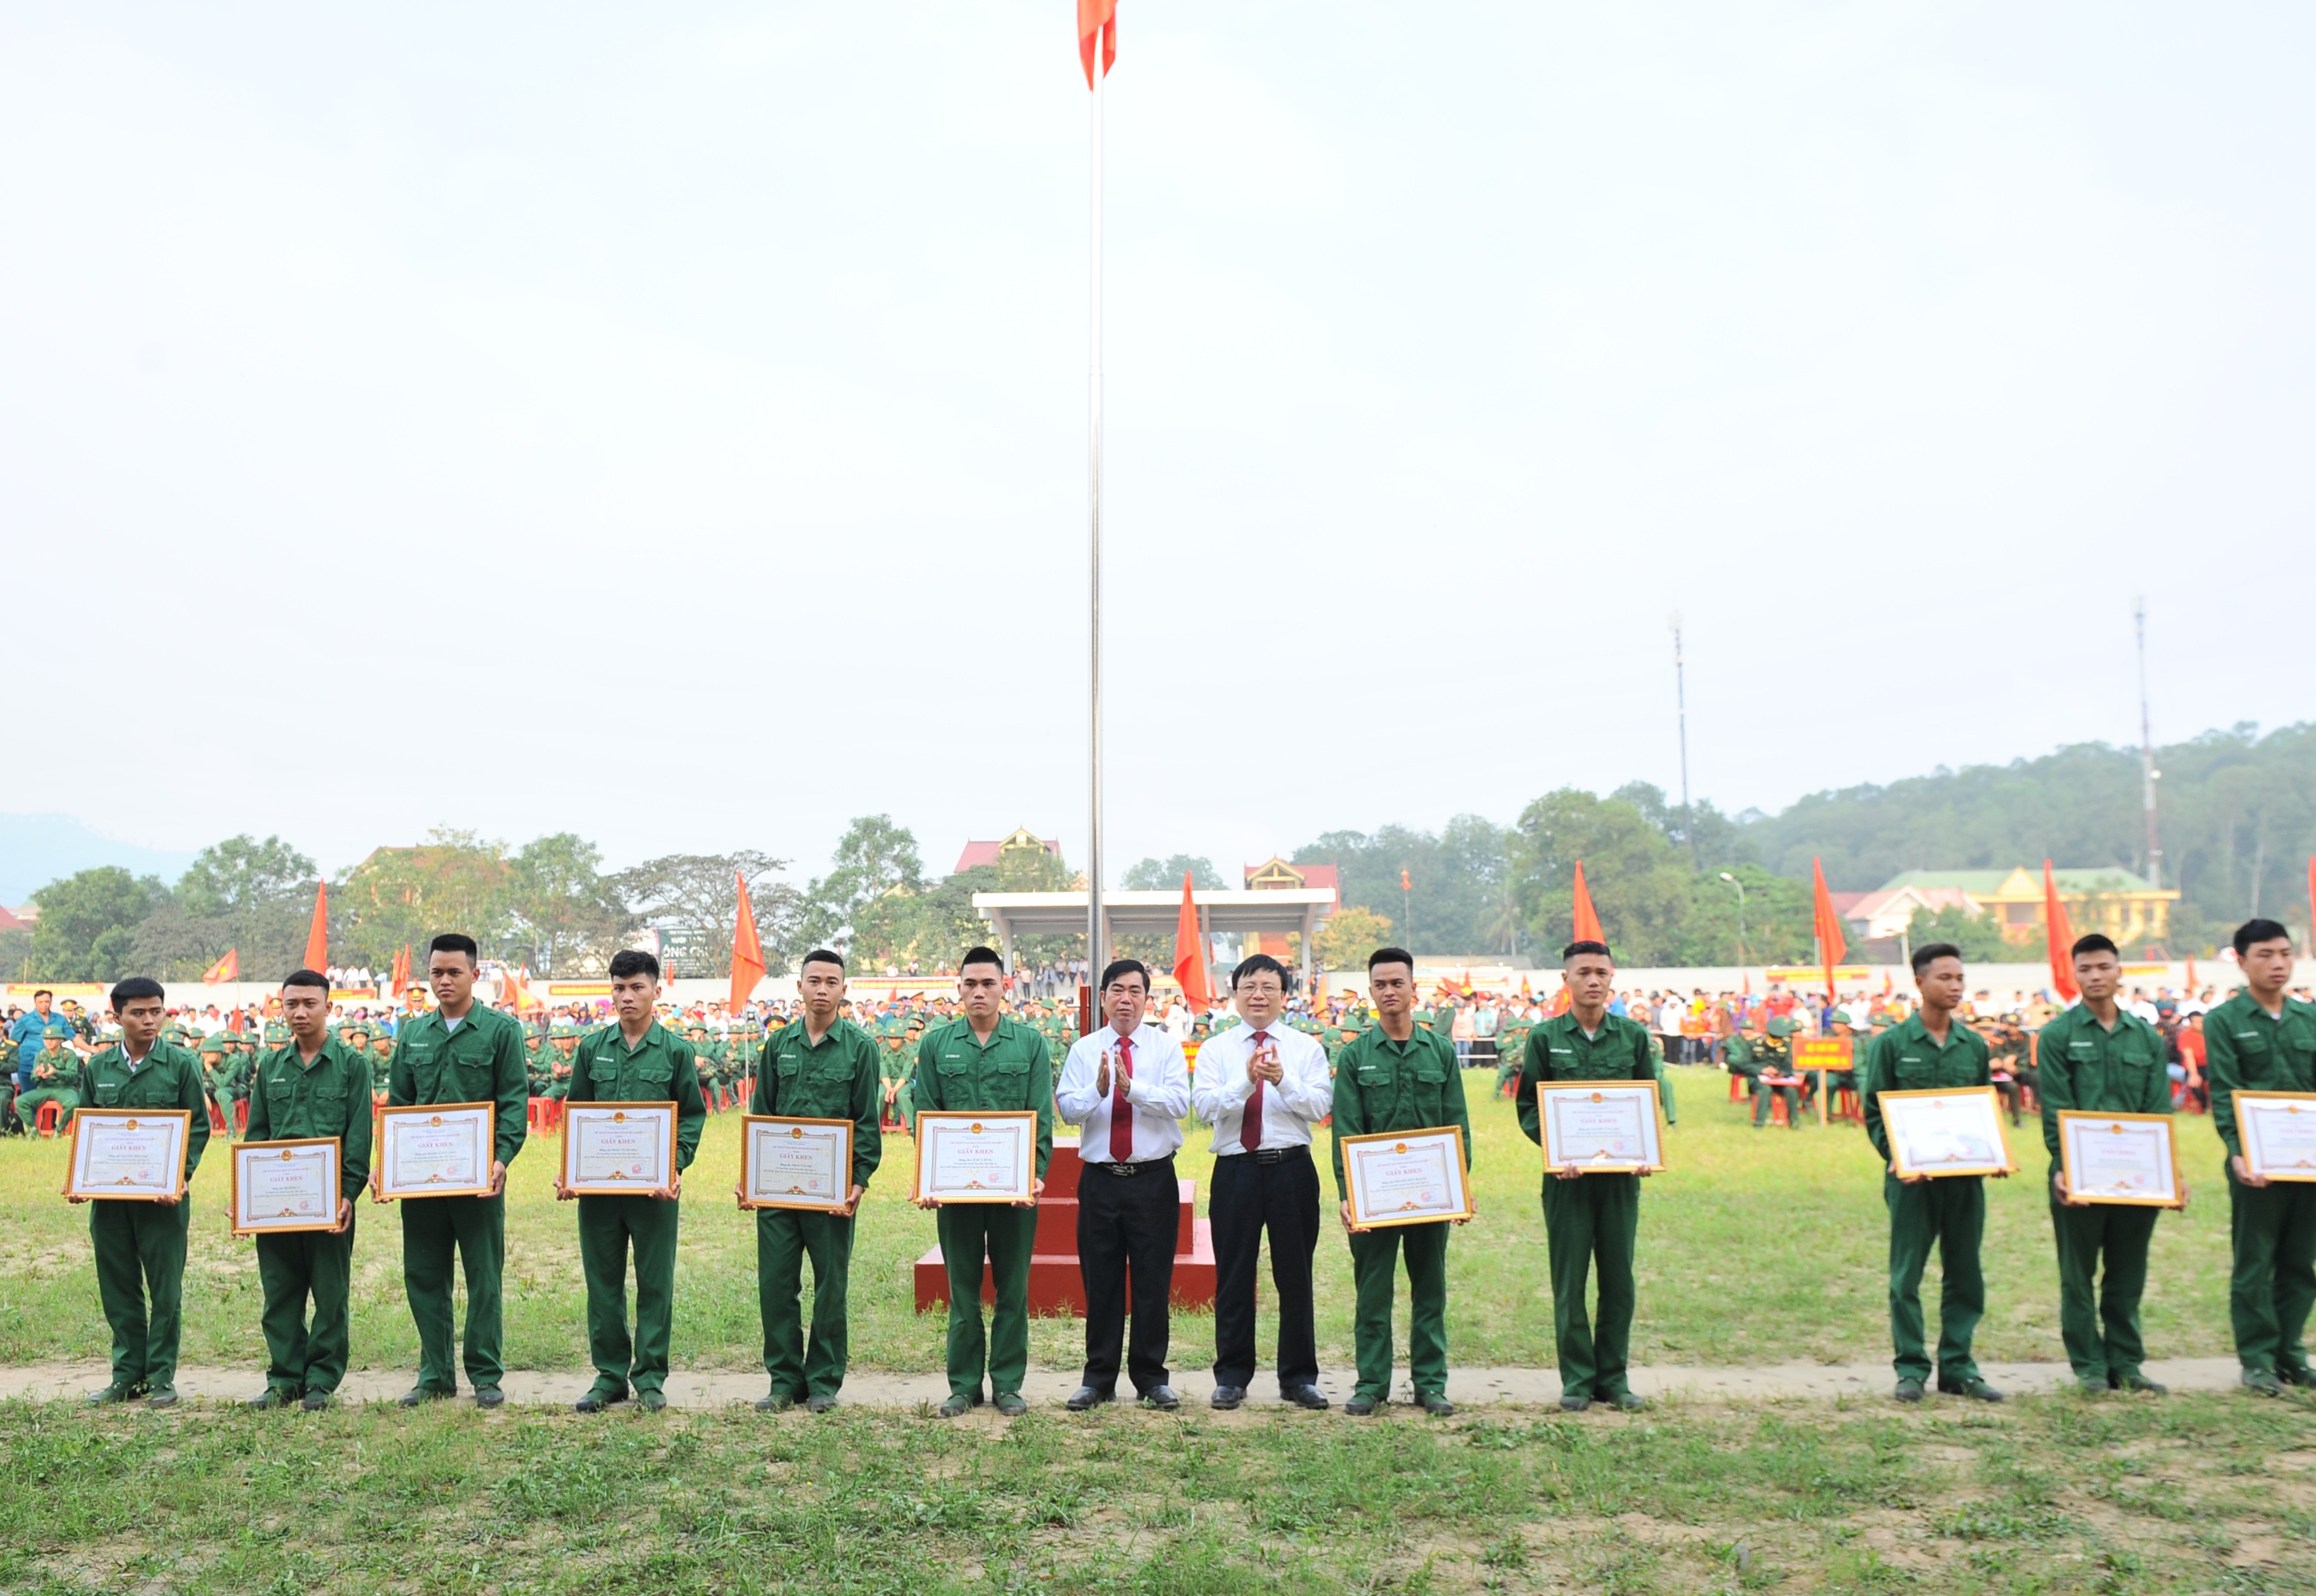 UBND huyện Nam Đàn trao tặng giấy khen có các quân nhân hoàn thành suất sắc nhiệm vụ trở về. Ảnh: Thành Cường